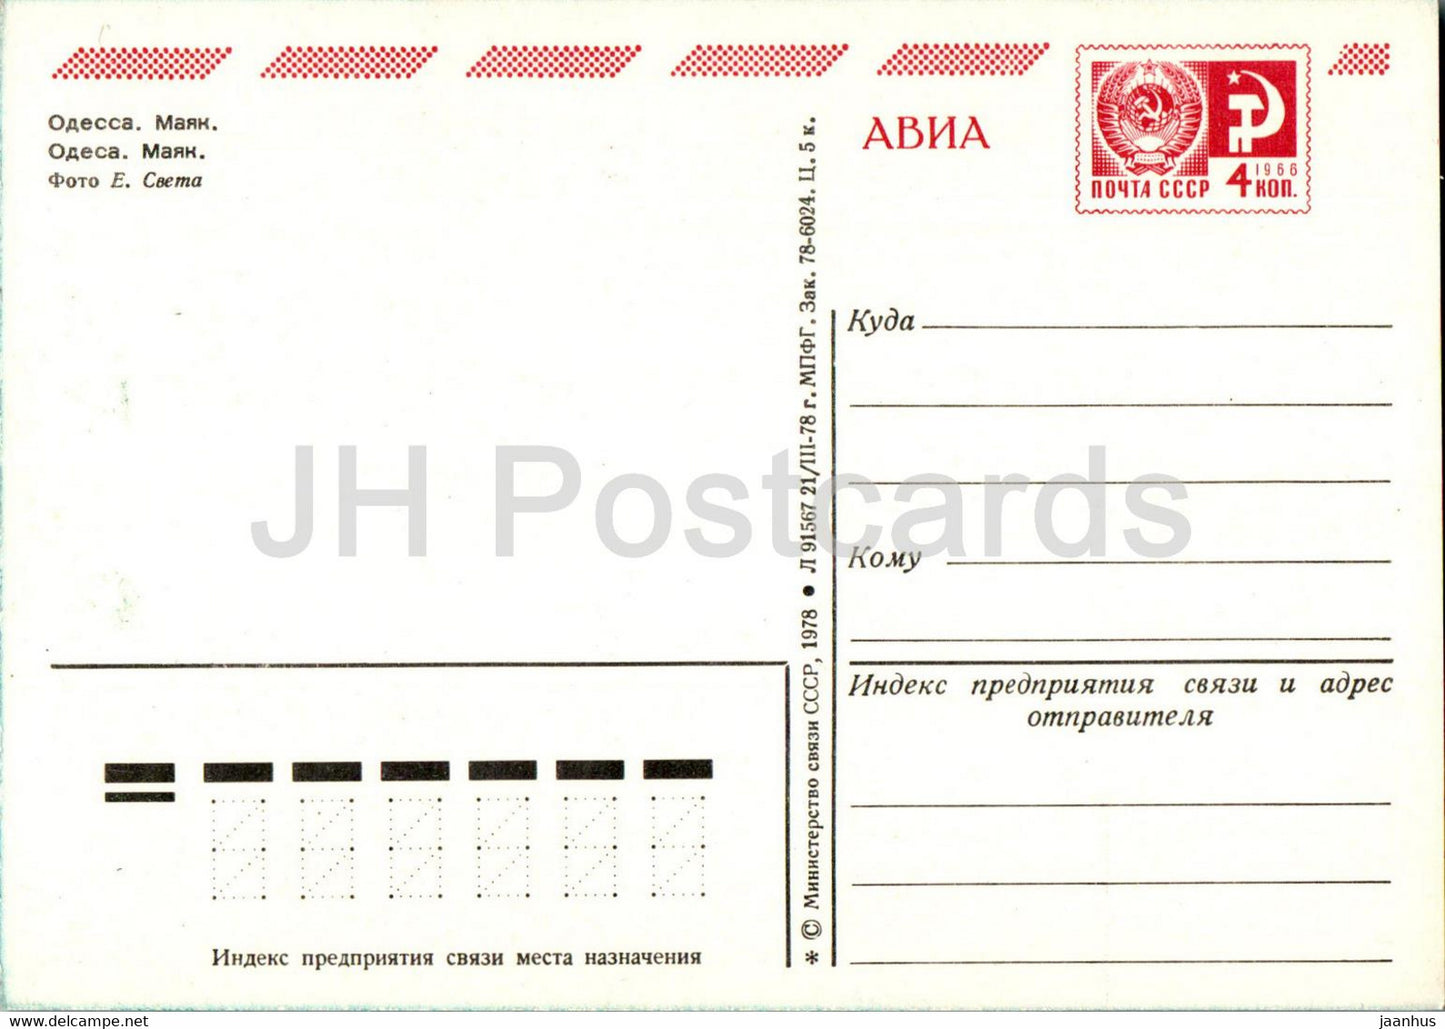 Odessa - Lighthouse - postal stationery - 1978 - Ukraine USSR - unused